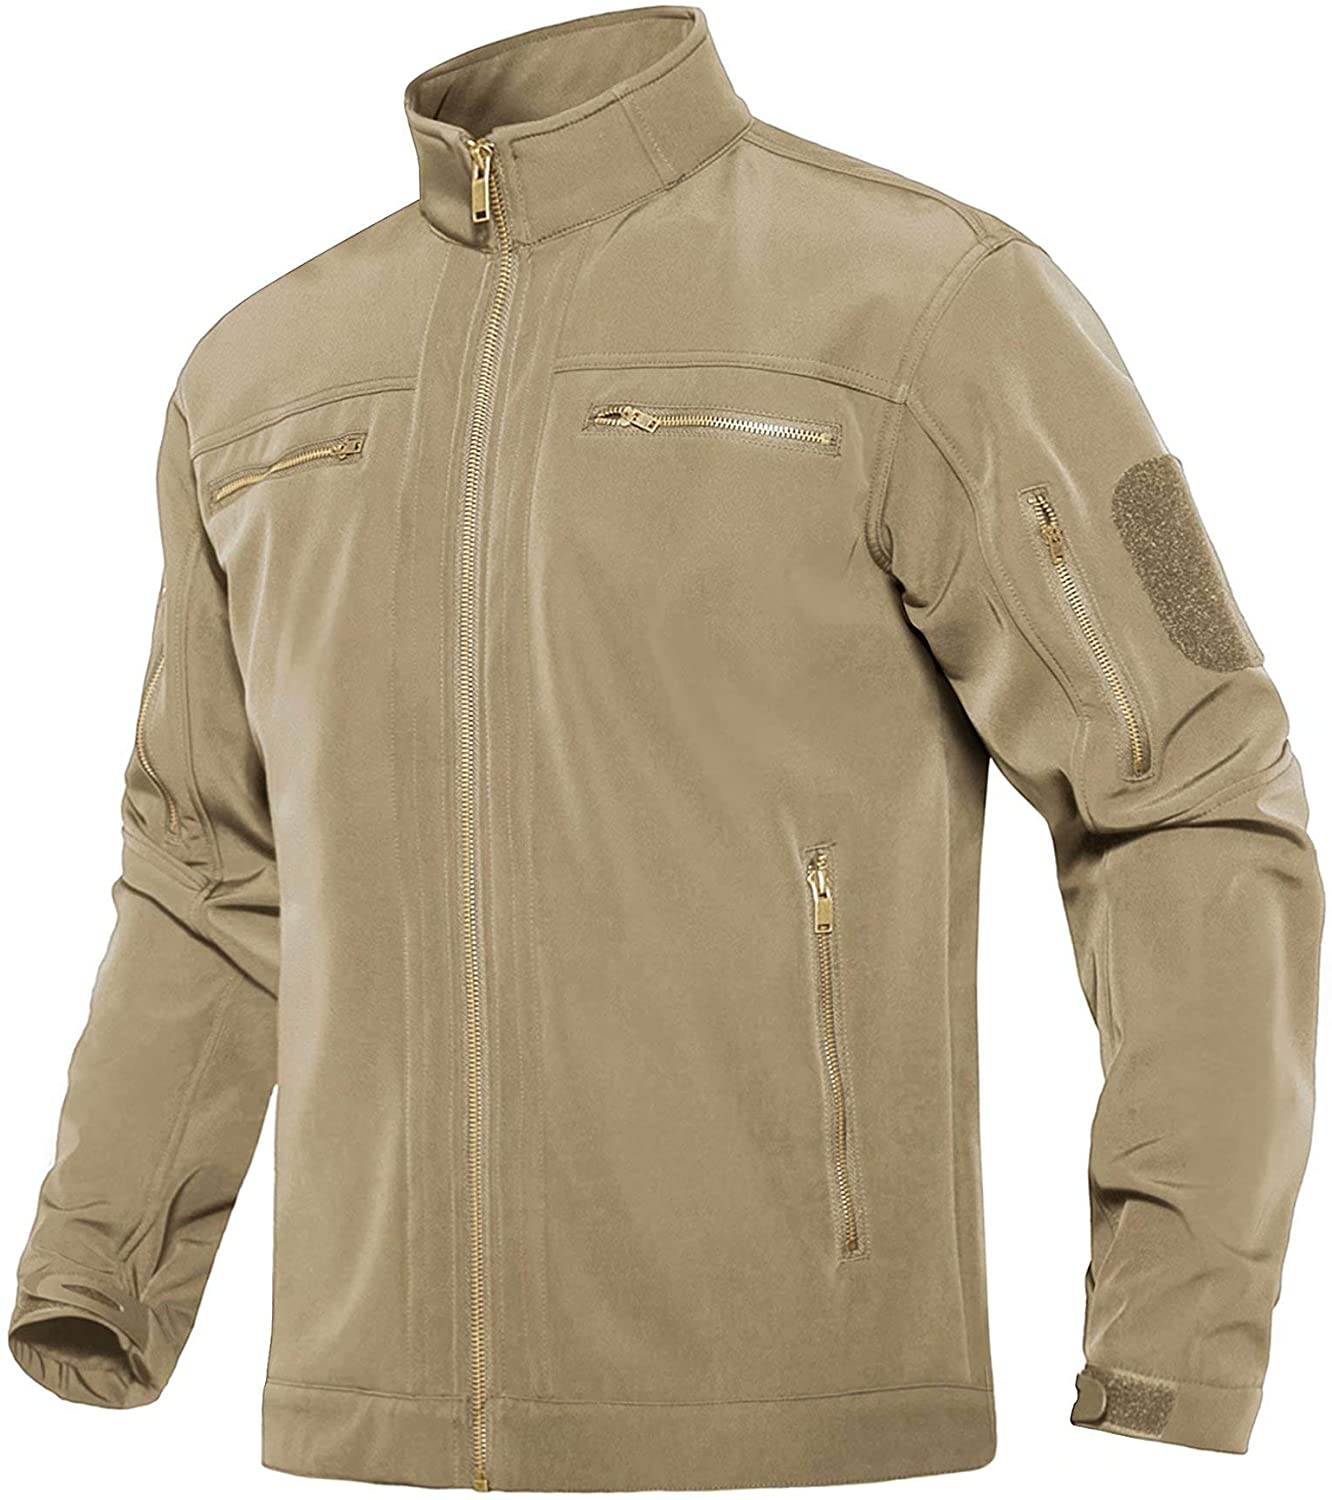 MAGCOMSEN Men's Winter Tactical Jacket 6 Metal Zipper Pockets Water Resistant Fleece Lined Softshell Jacket 